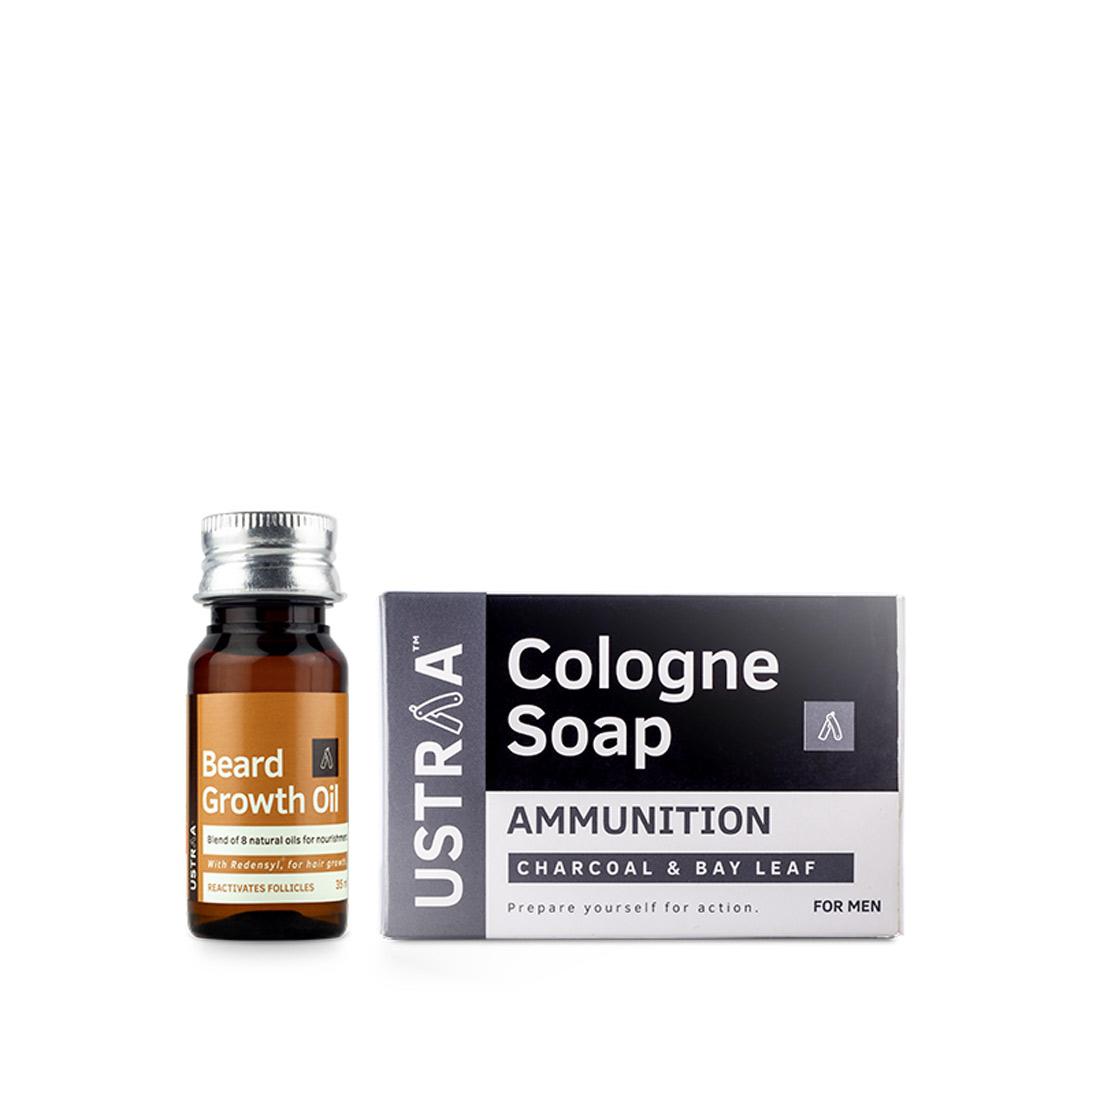 Beard Growth Oil & Cologne Soap - Ammunition